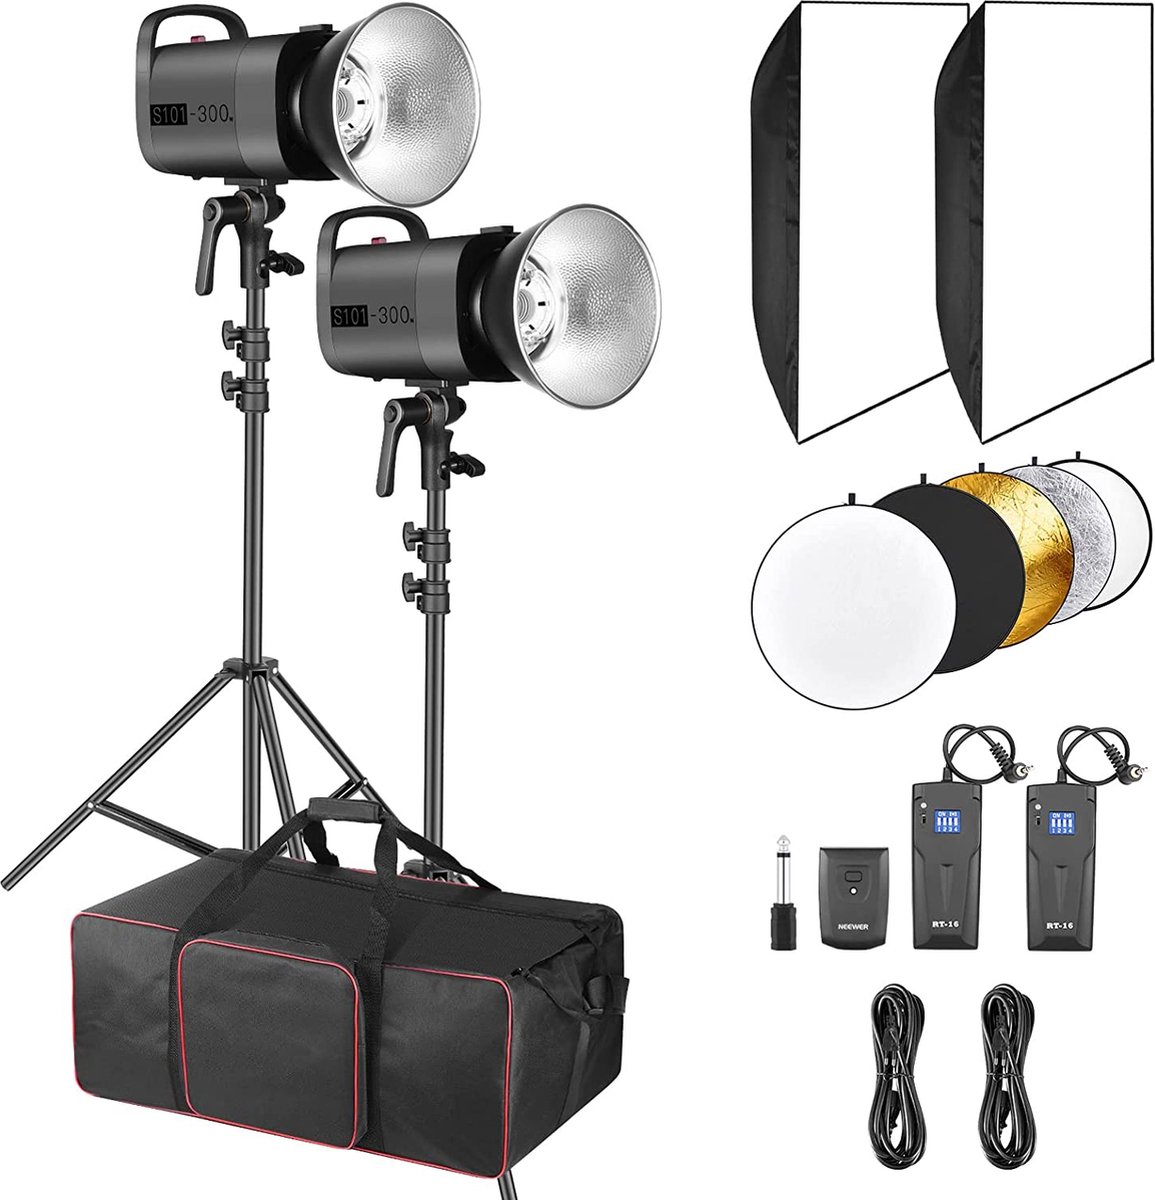 Neewer® - 600W - Fotostudio -Zaklamp Verlichtingsset - (2) S101 - 300W - 5600K - Monolight met Bowens Holder - Softbox - RT-16 Zender - Lamp Standaard - Reflector en Tas voor Studio - Shots Fotografie - Softboxen